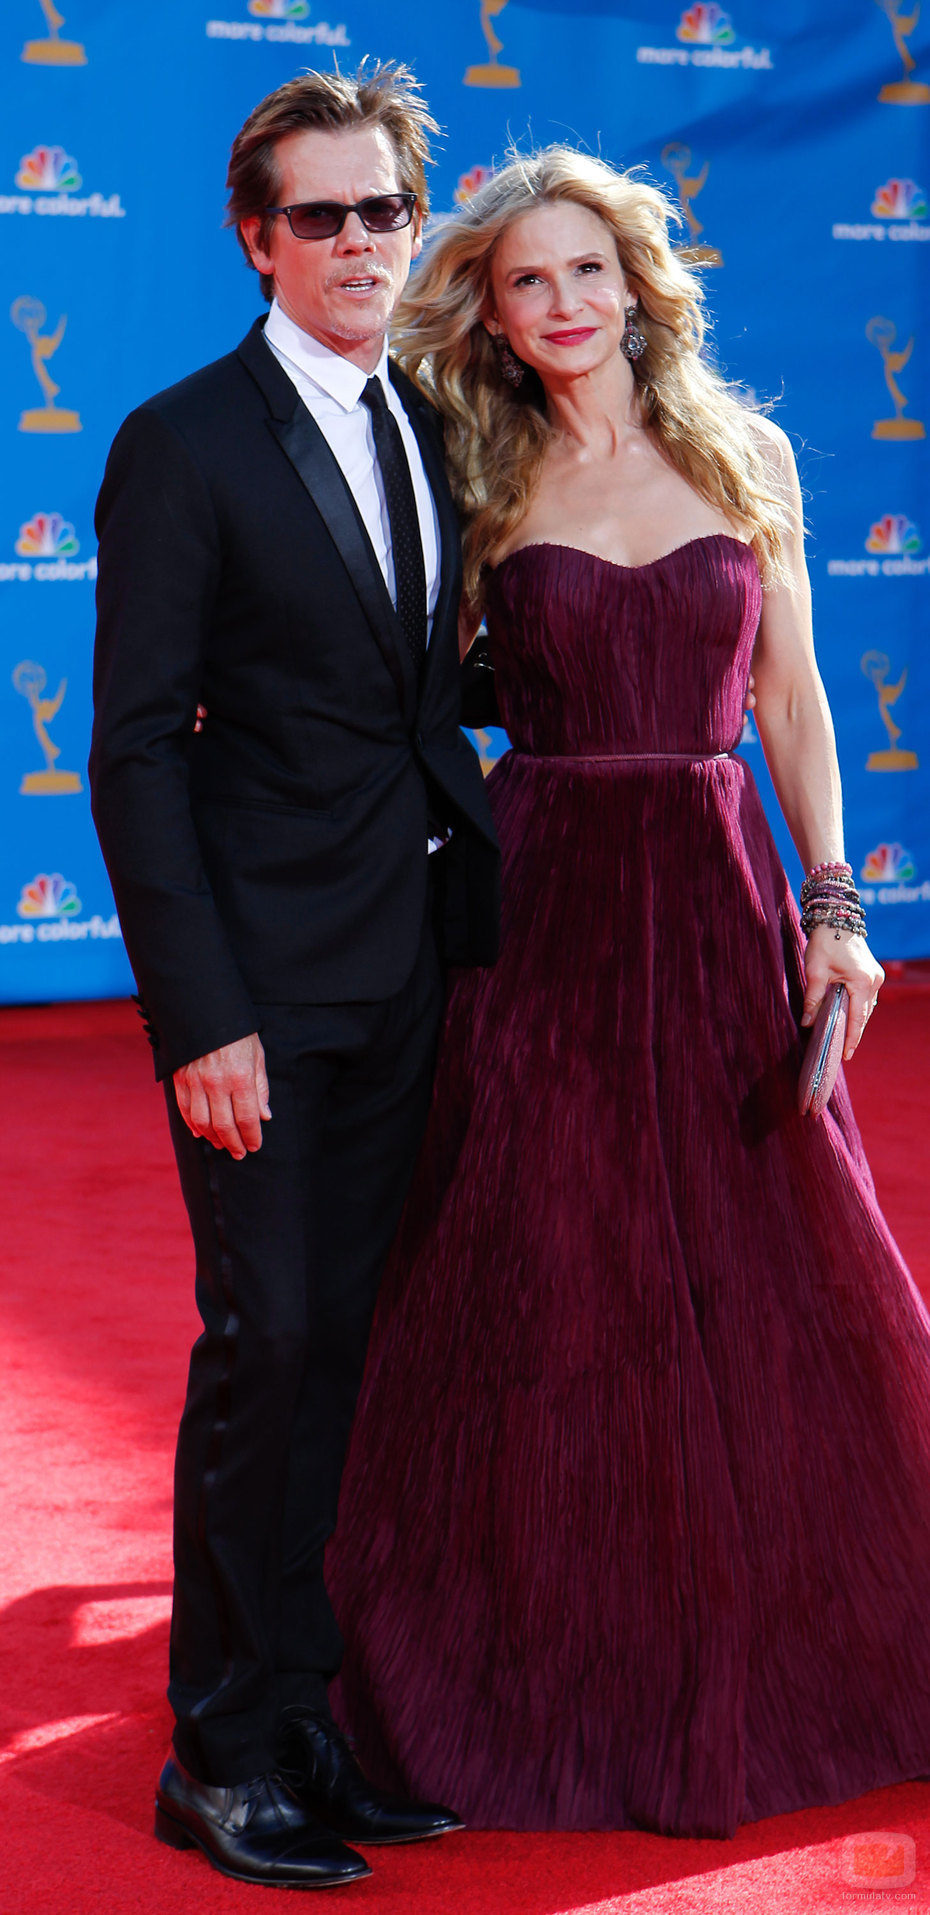 Kevin Bacon y Kyra Sedgwick en los Premios Emmy